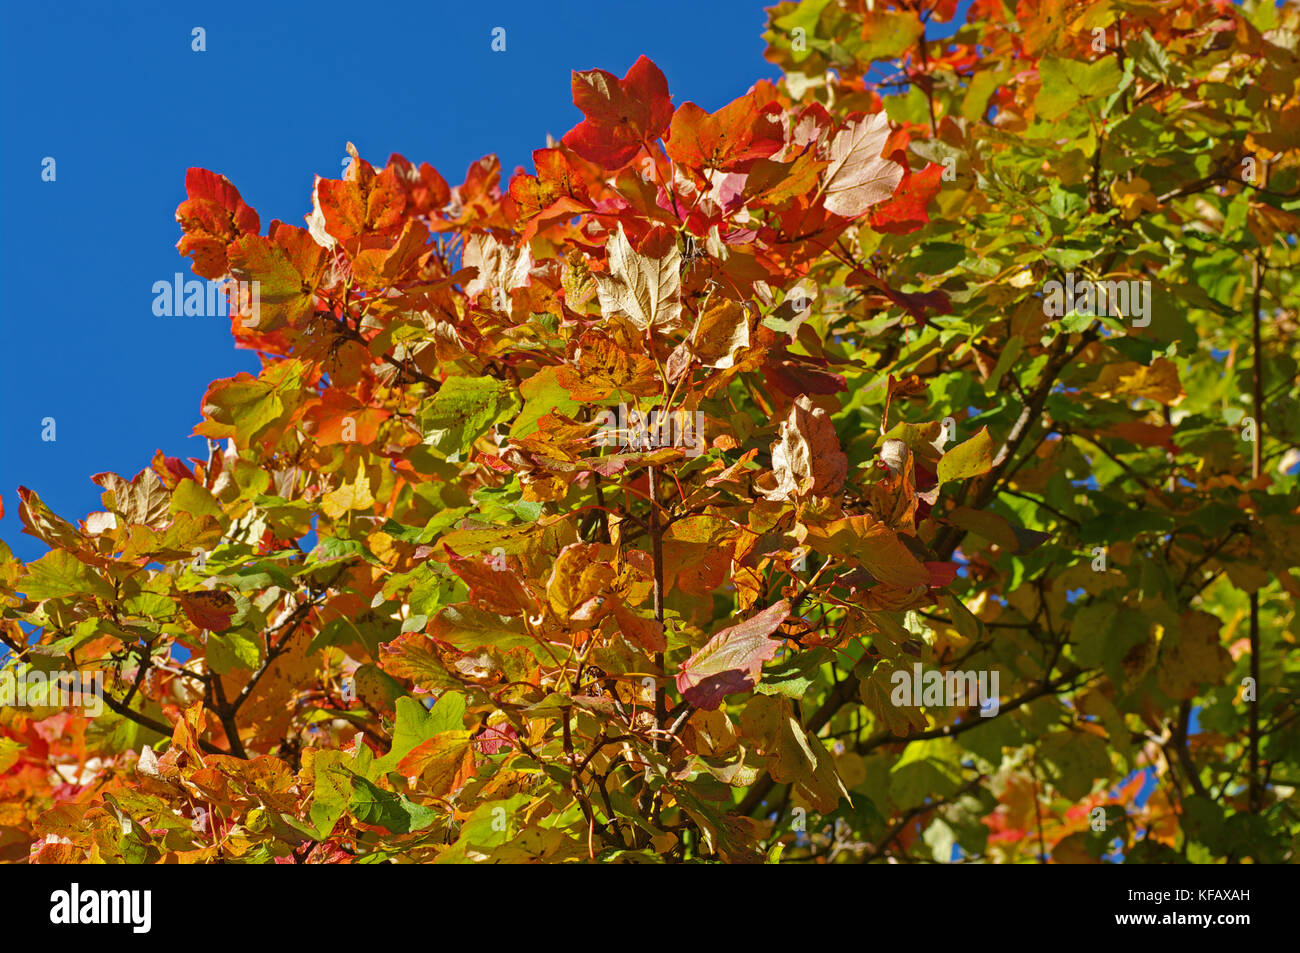 Les couleurs de l'automne : arbres de la montagnes aurunci (monts Aurunci), Italie Banque D'Images